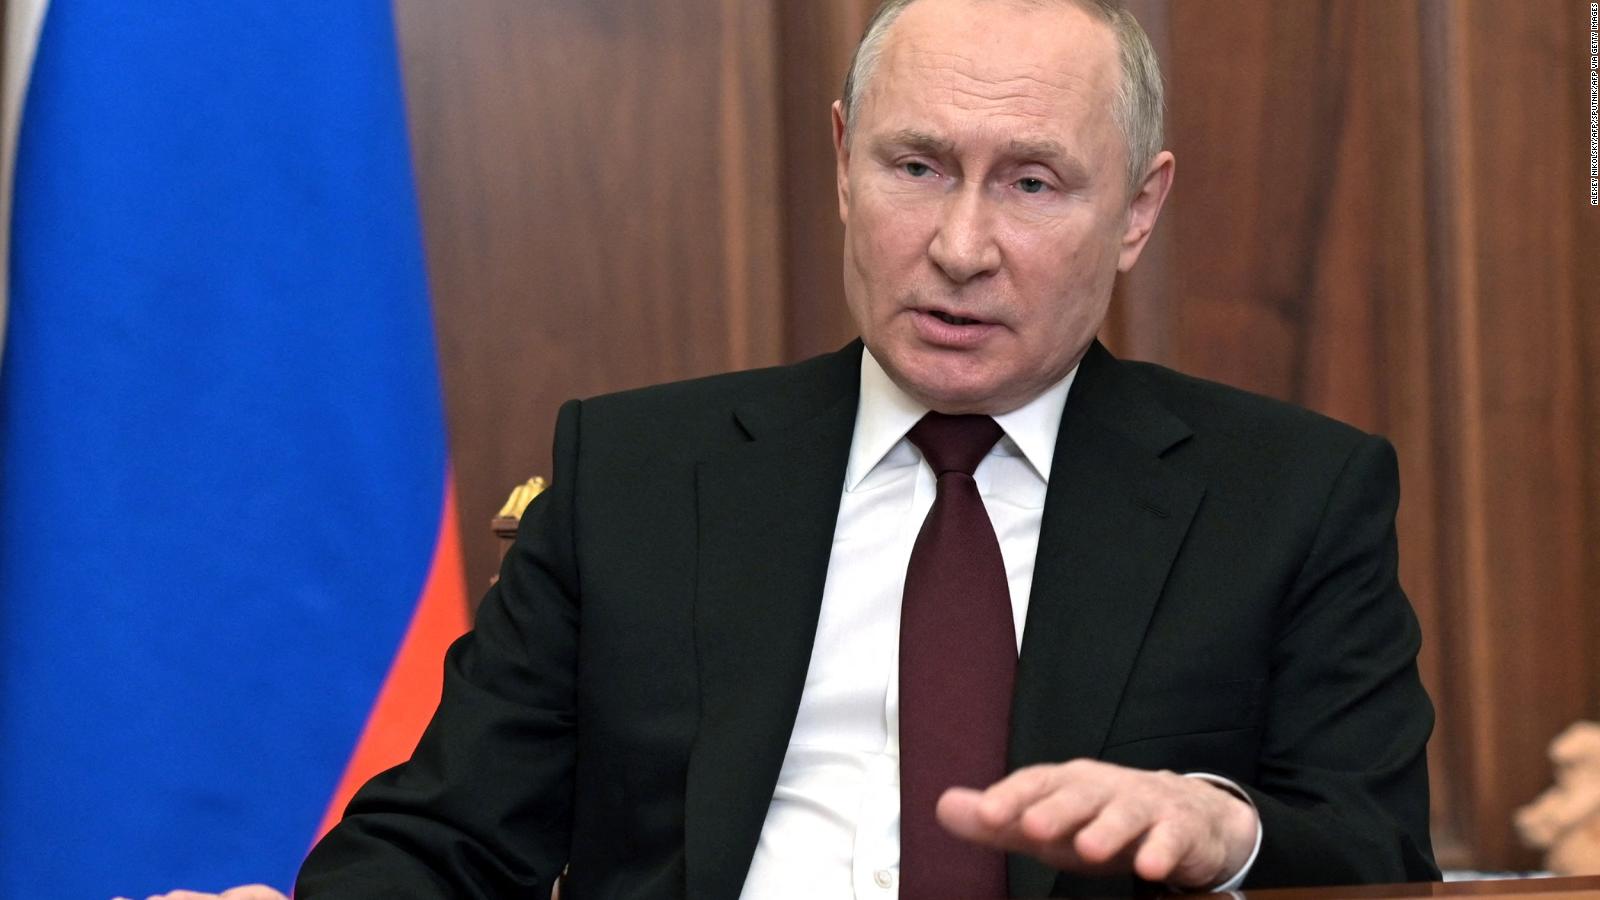 Putin encarna al ultranacionalismo ruso, dice analista